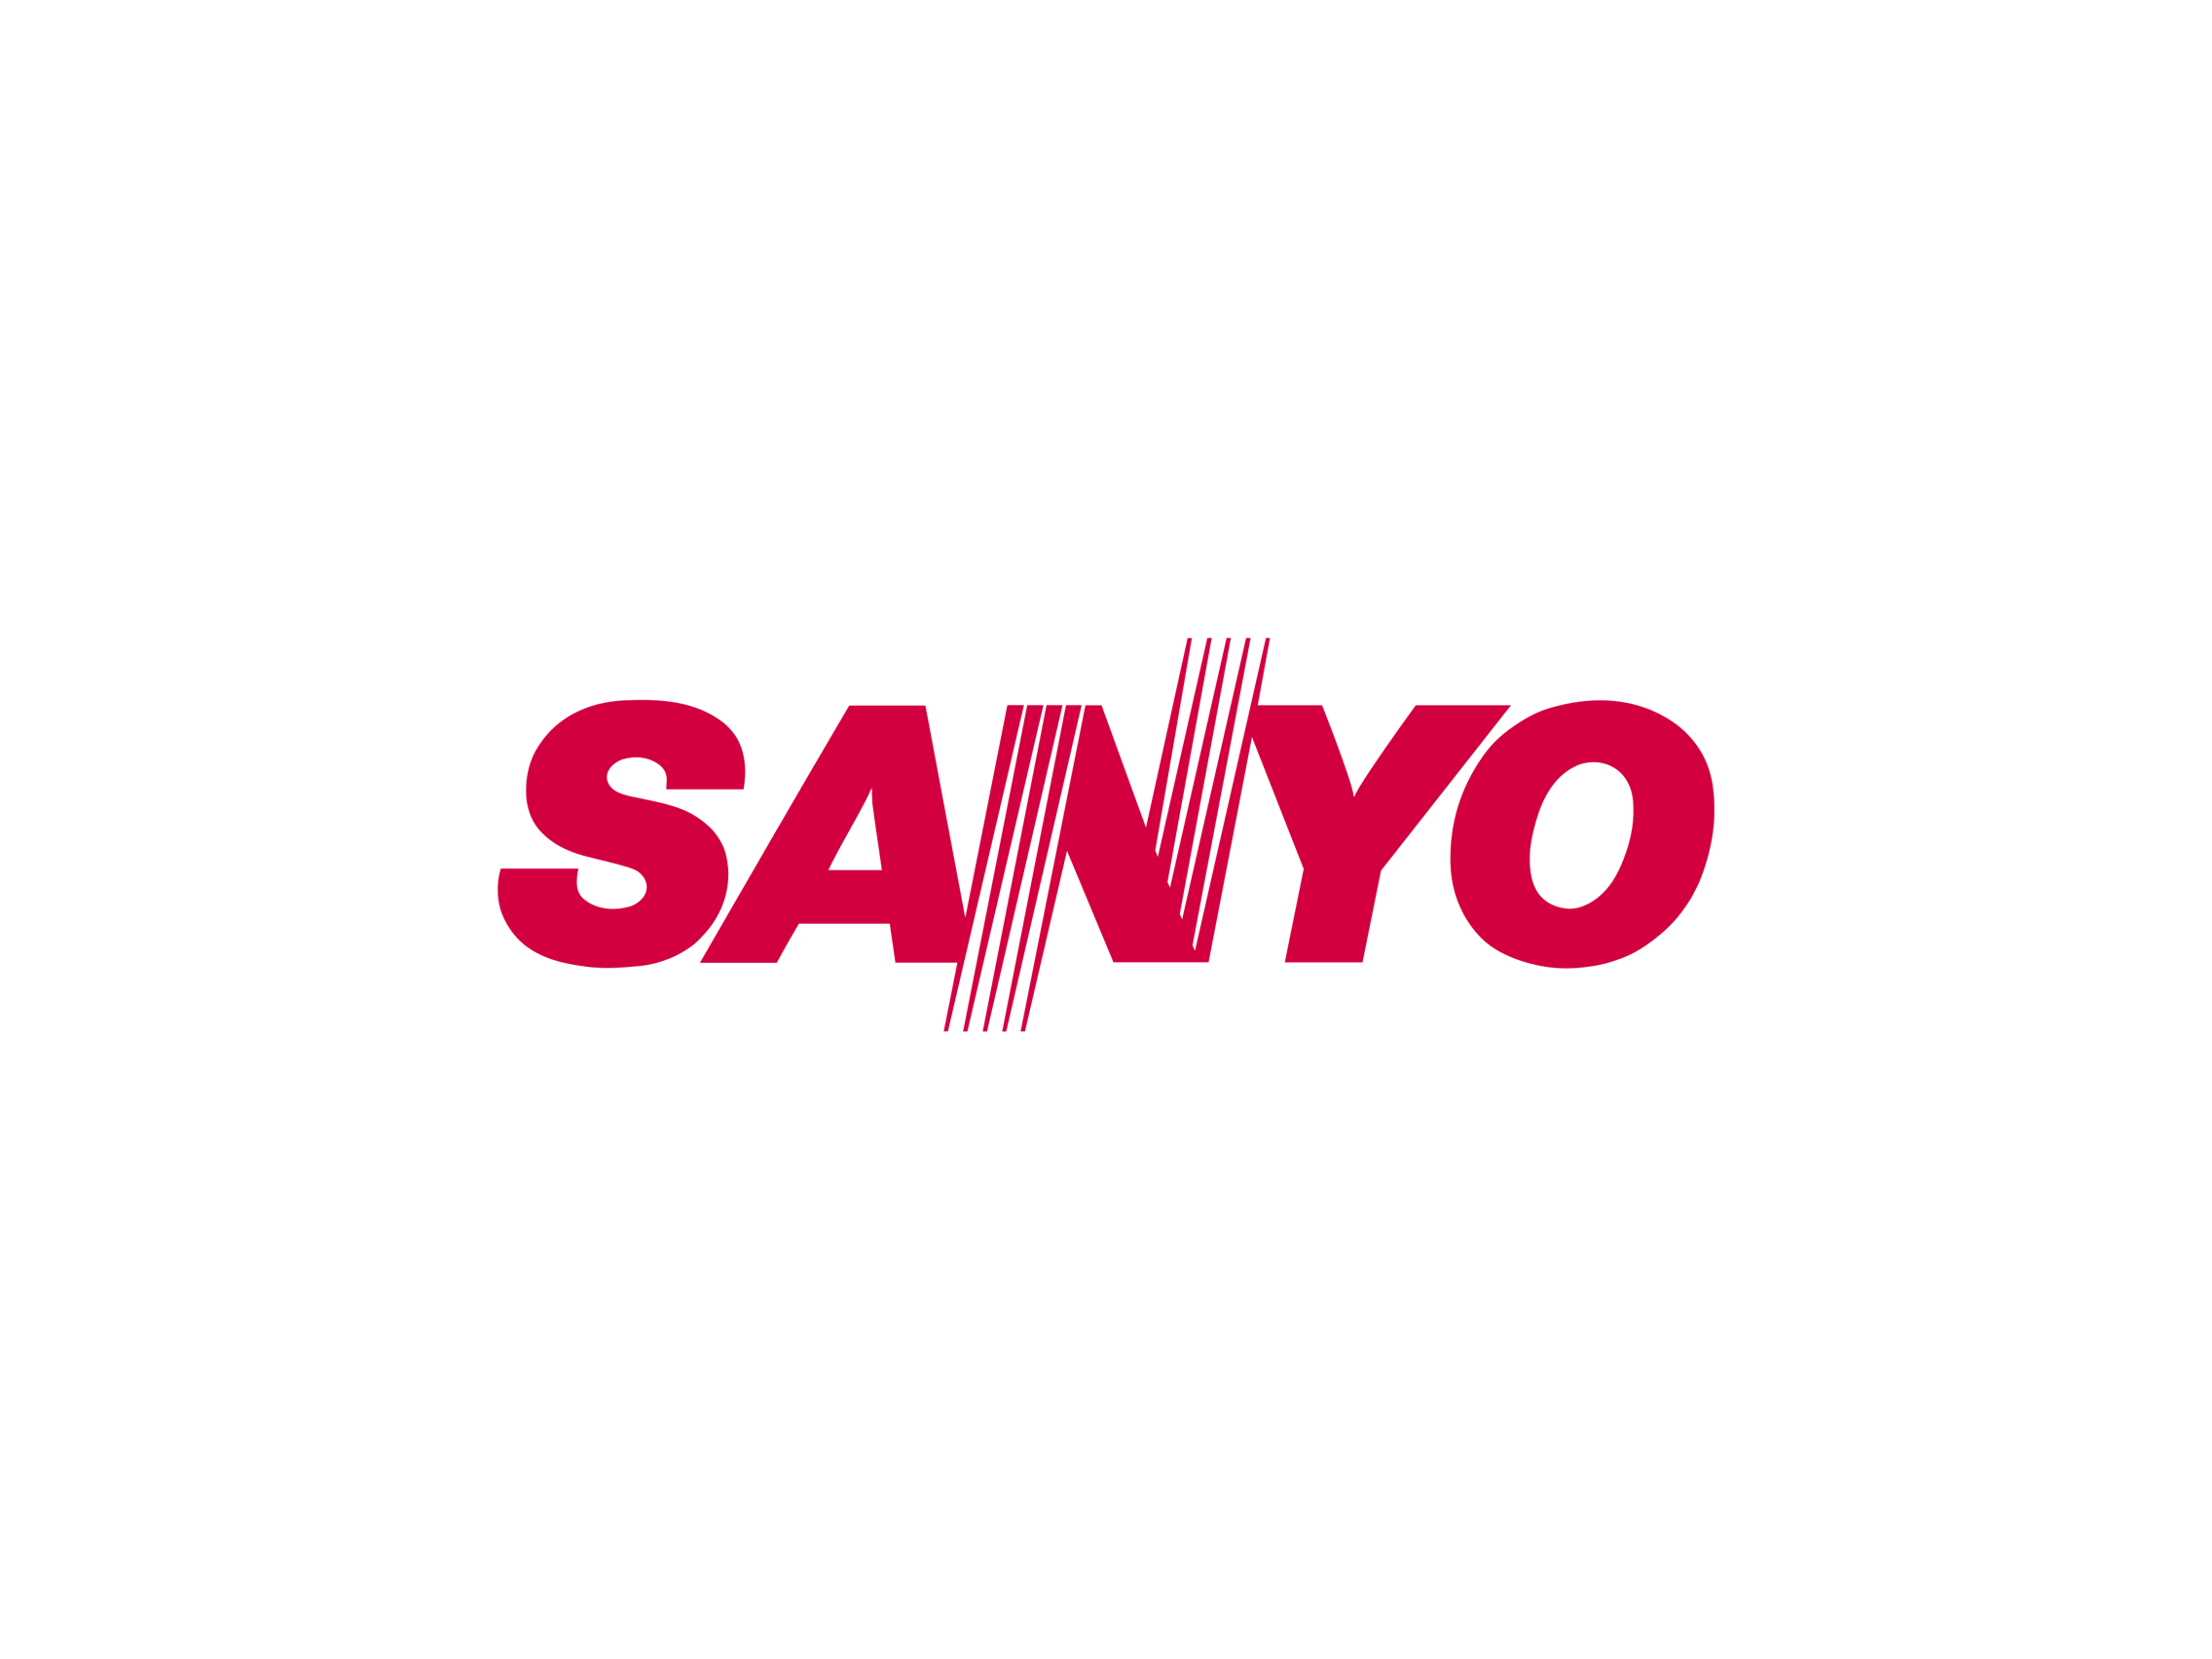 sanyo-service-centre